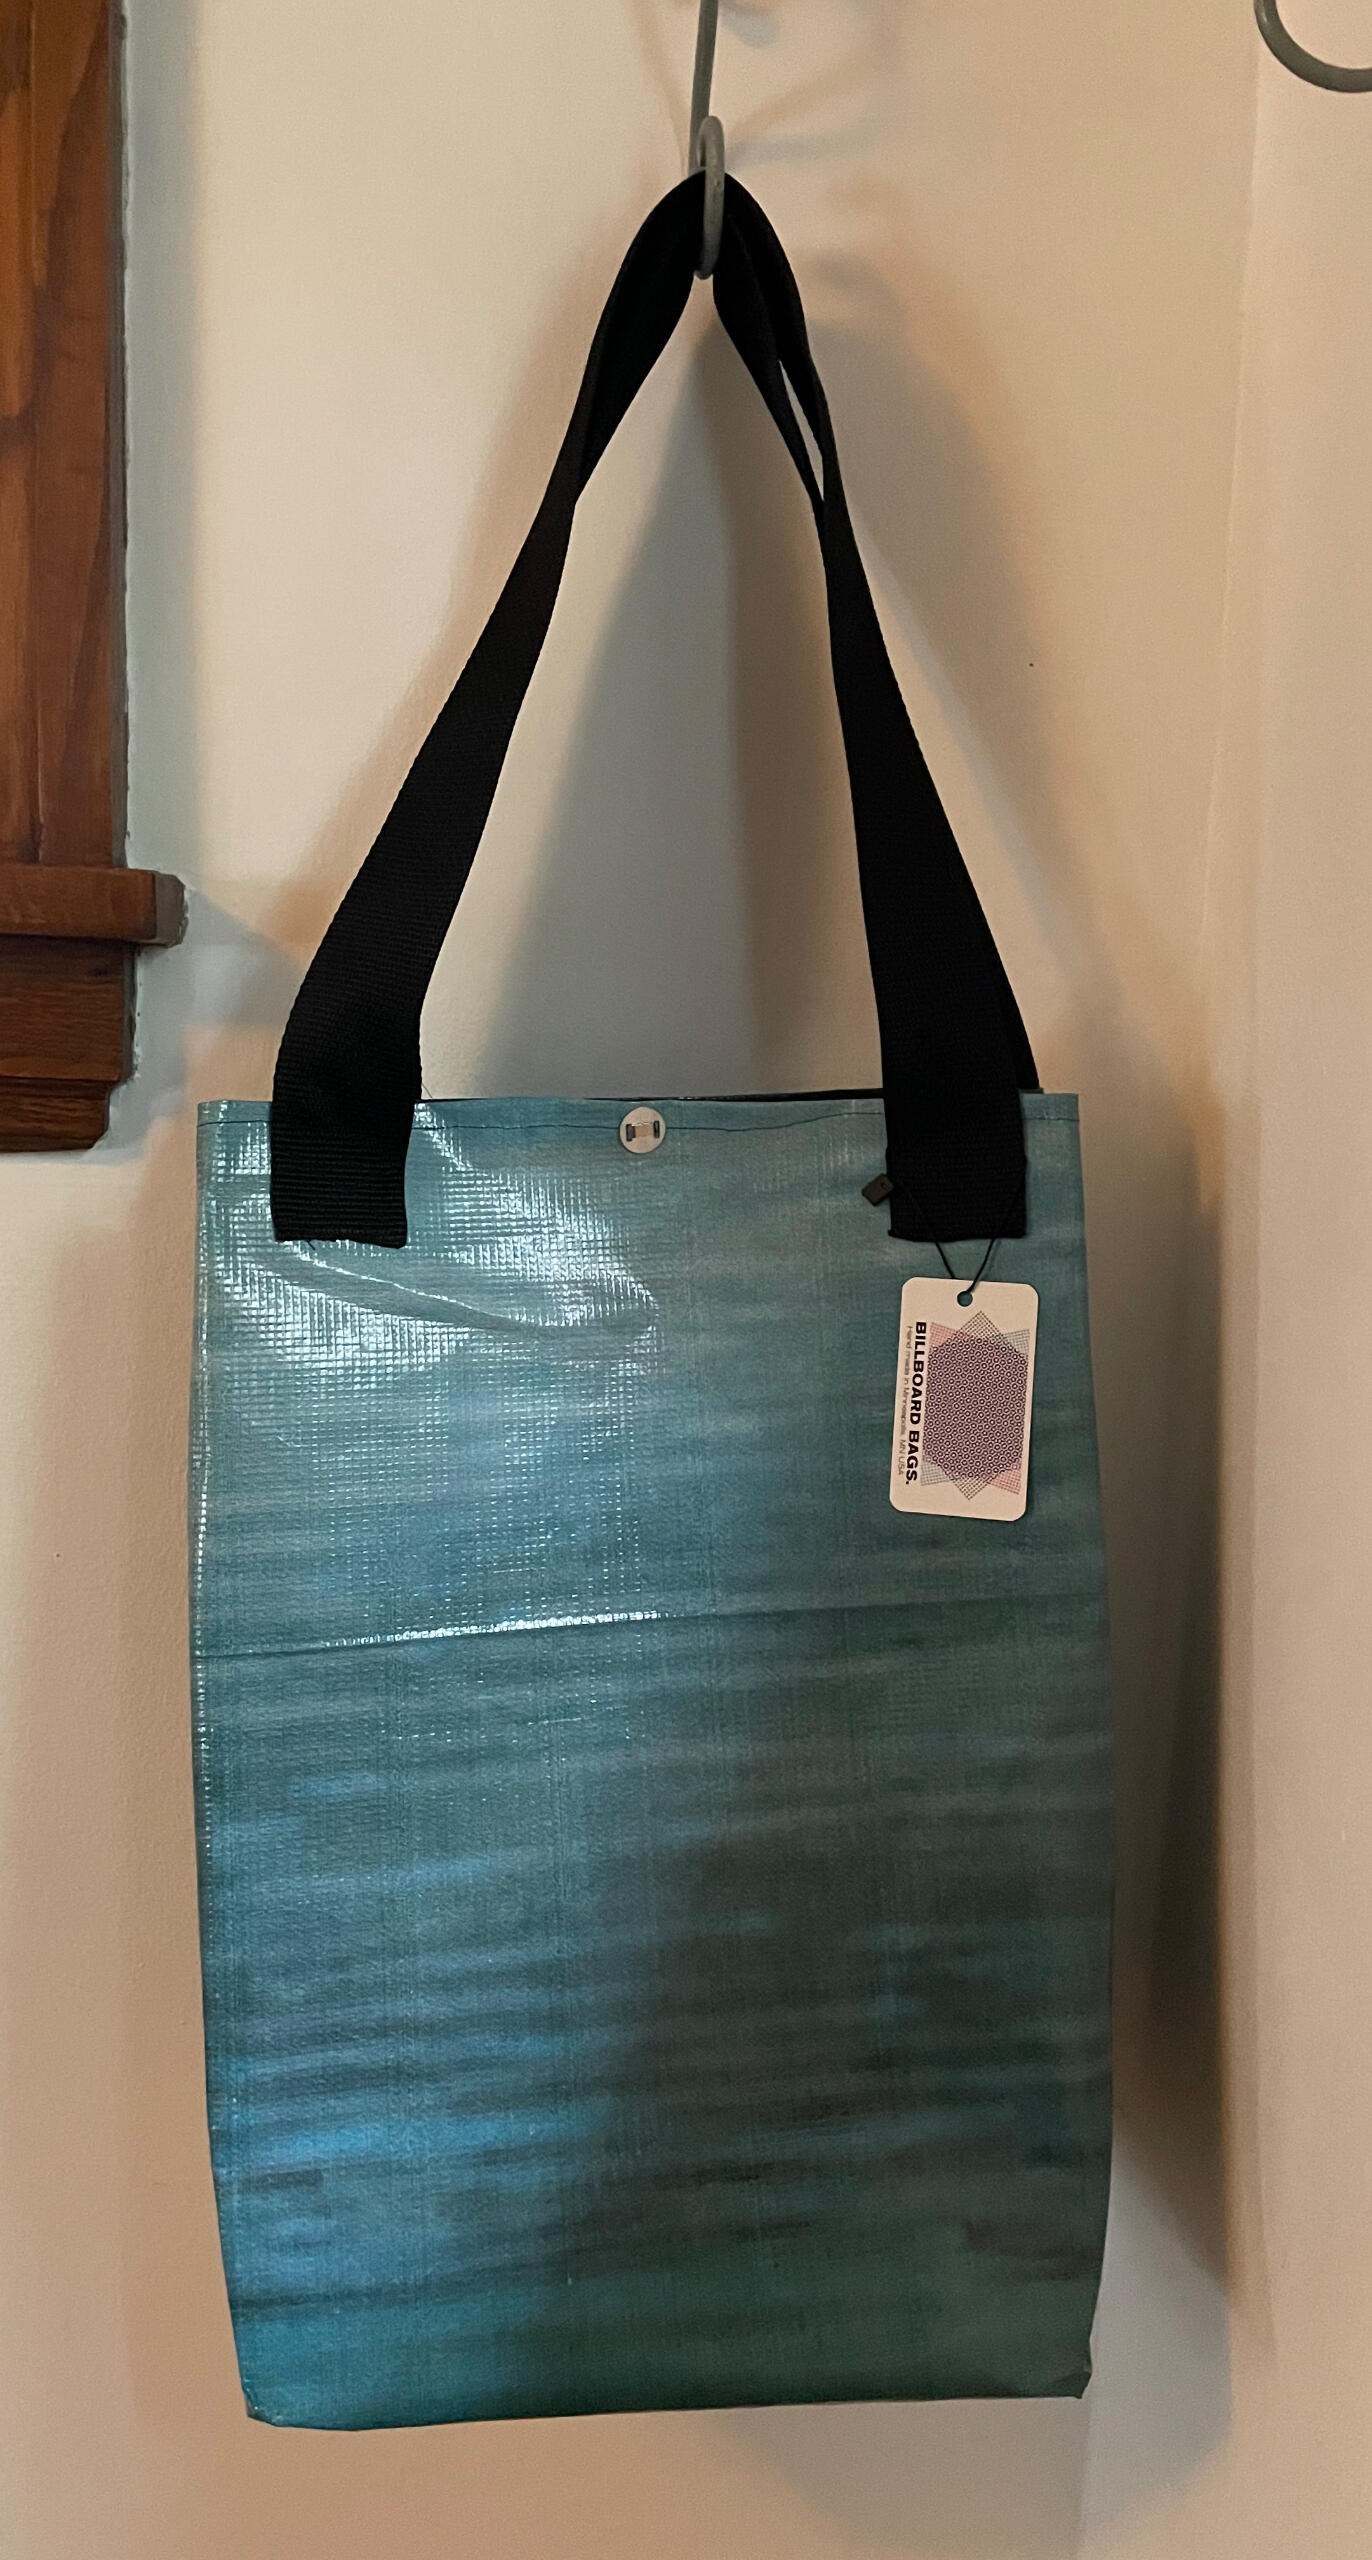 $30.: Large Bag-20x9 footprint